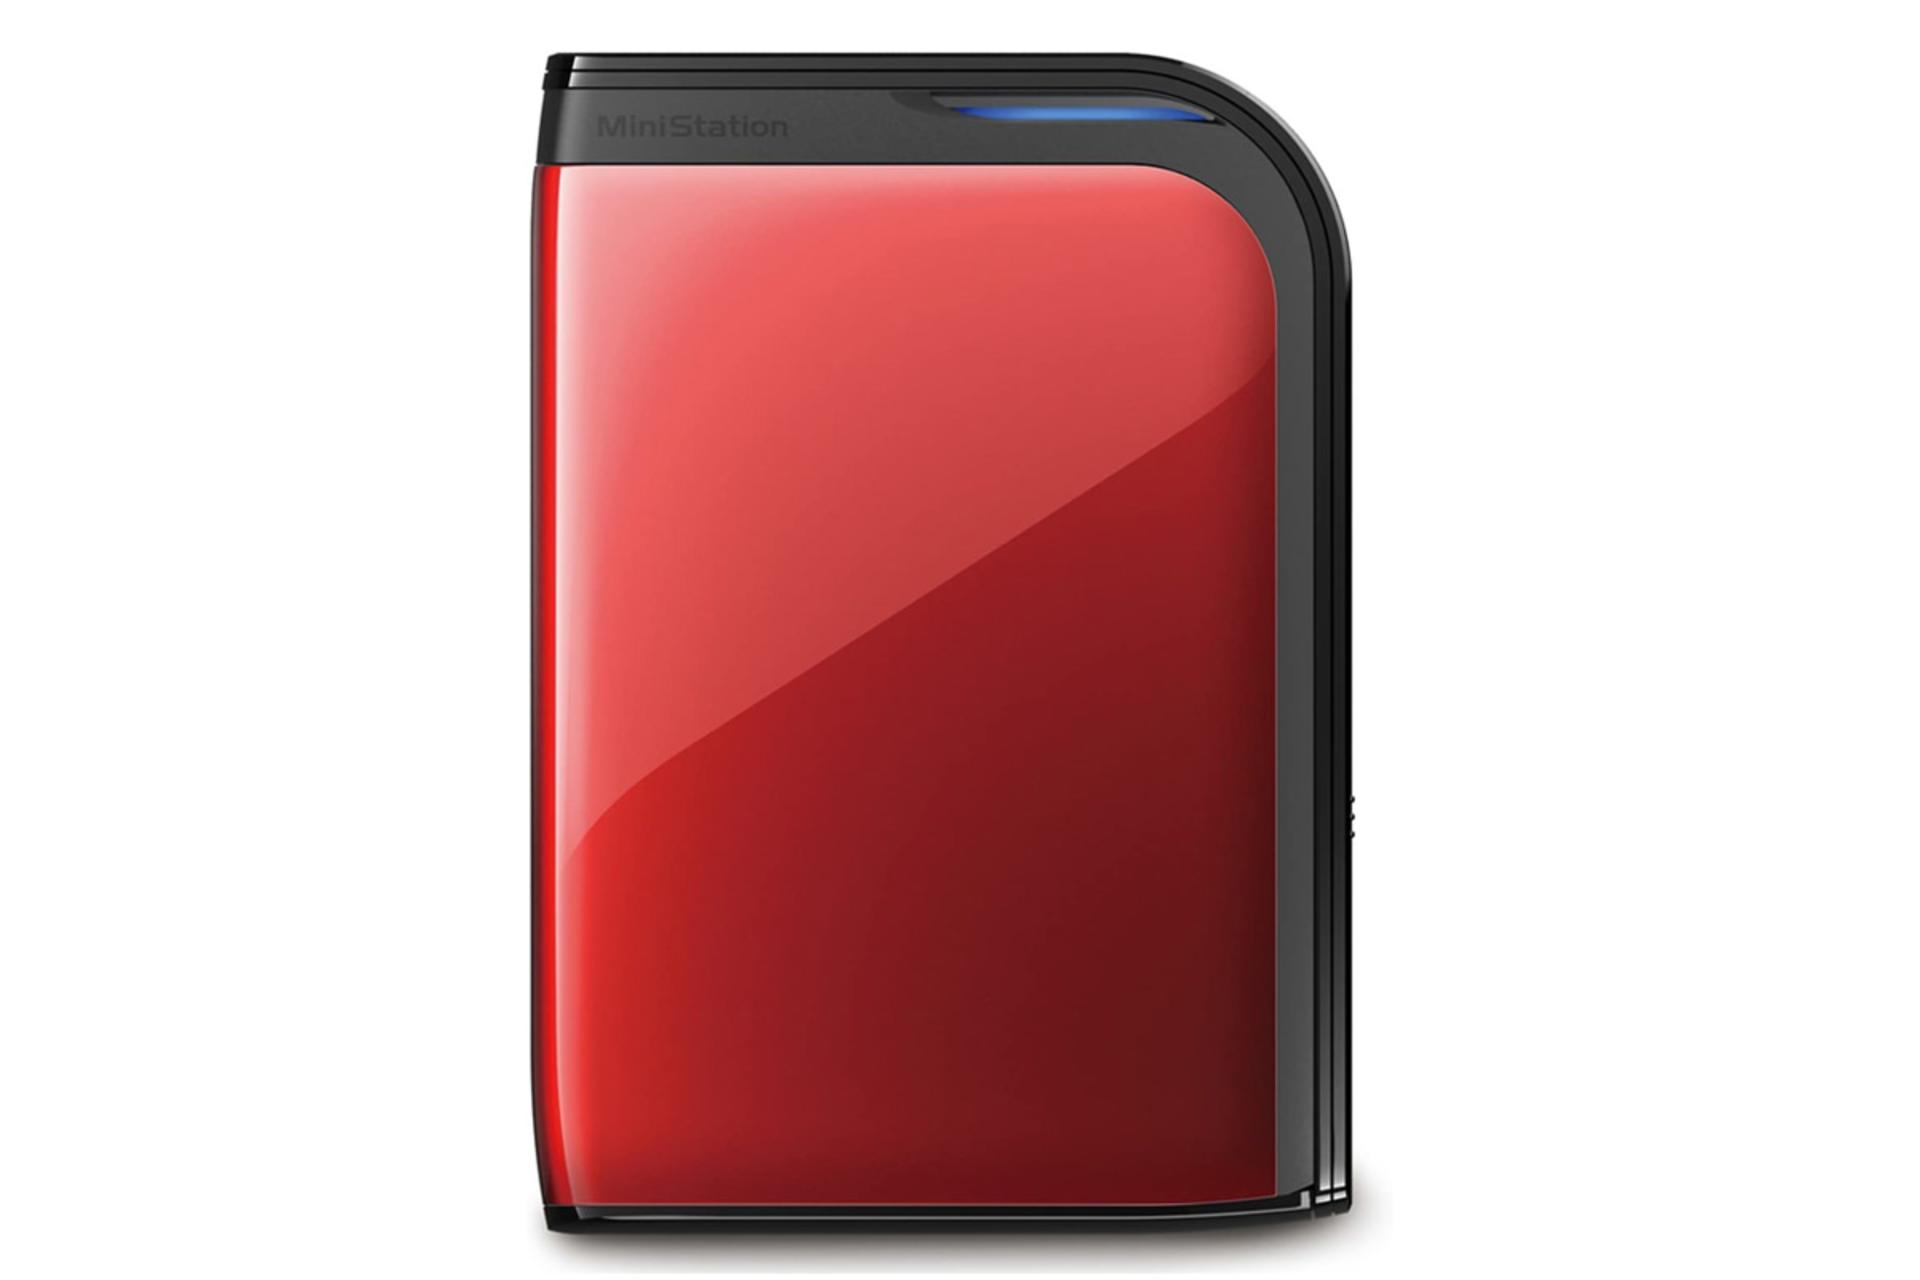 نمای جلو هارد دیسک بوفالو HD-PZU3 HD-PZ1.0U3R ظرفیت 1 ترابایت رنگ قرمز